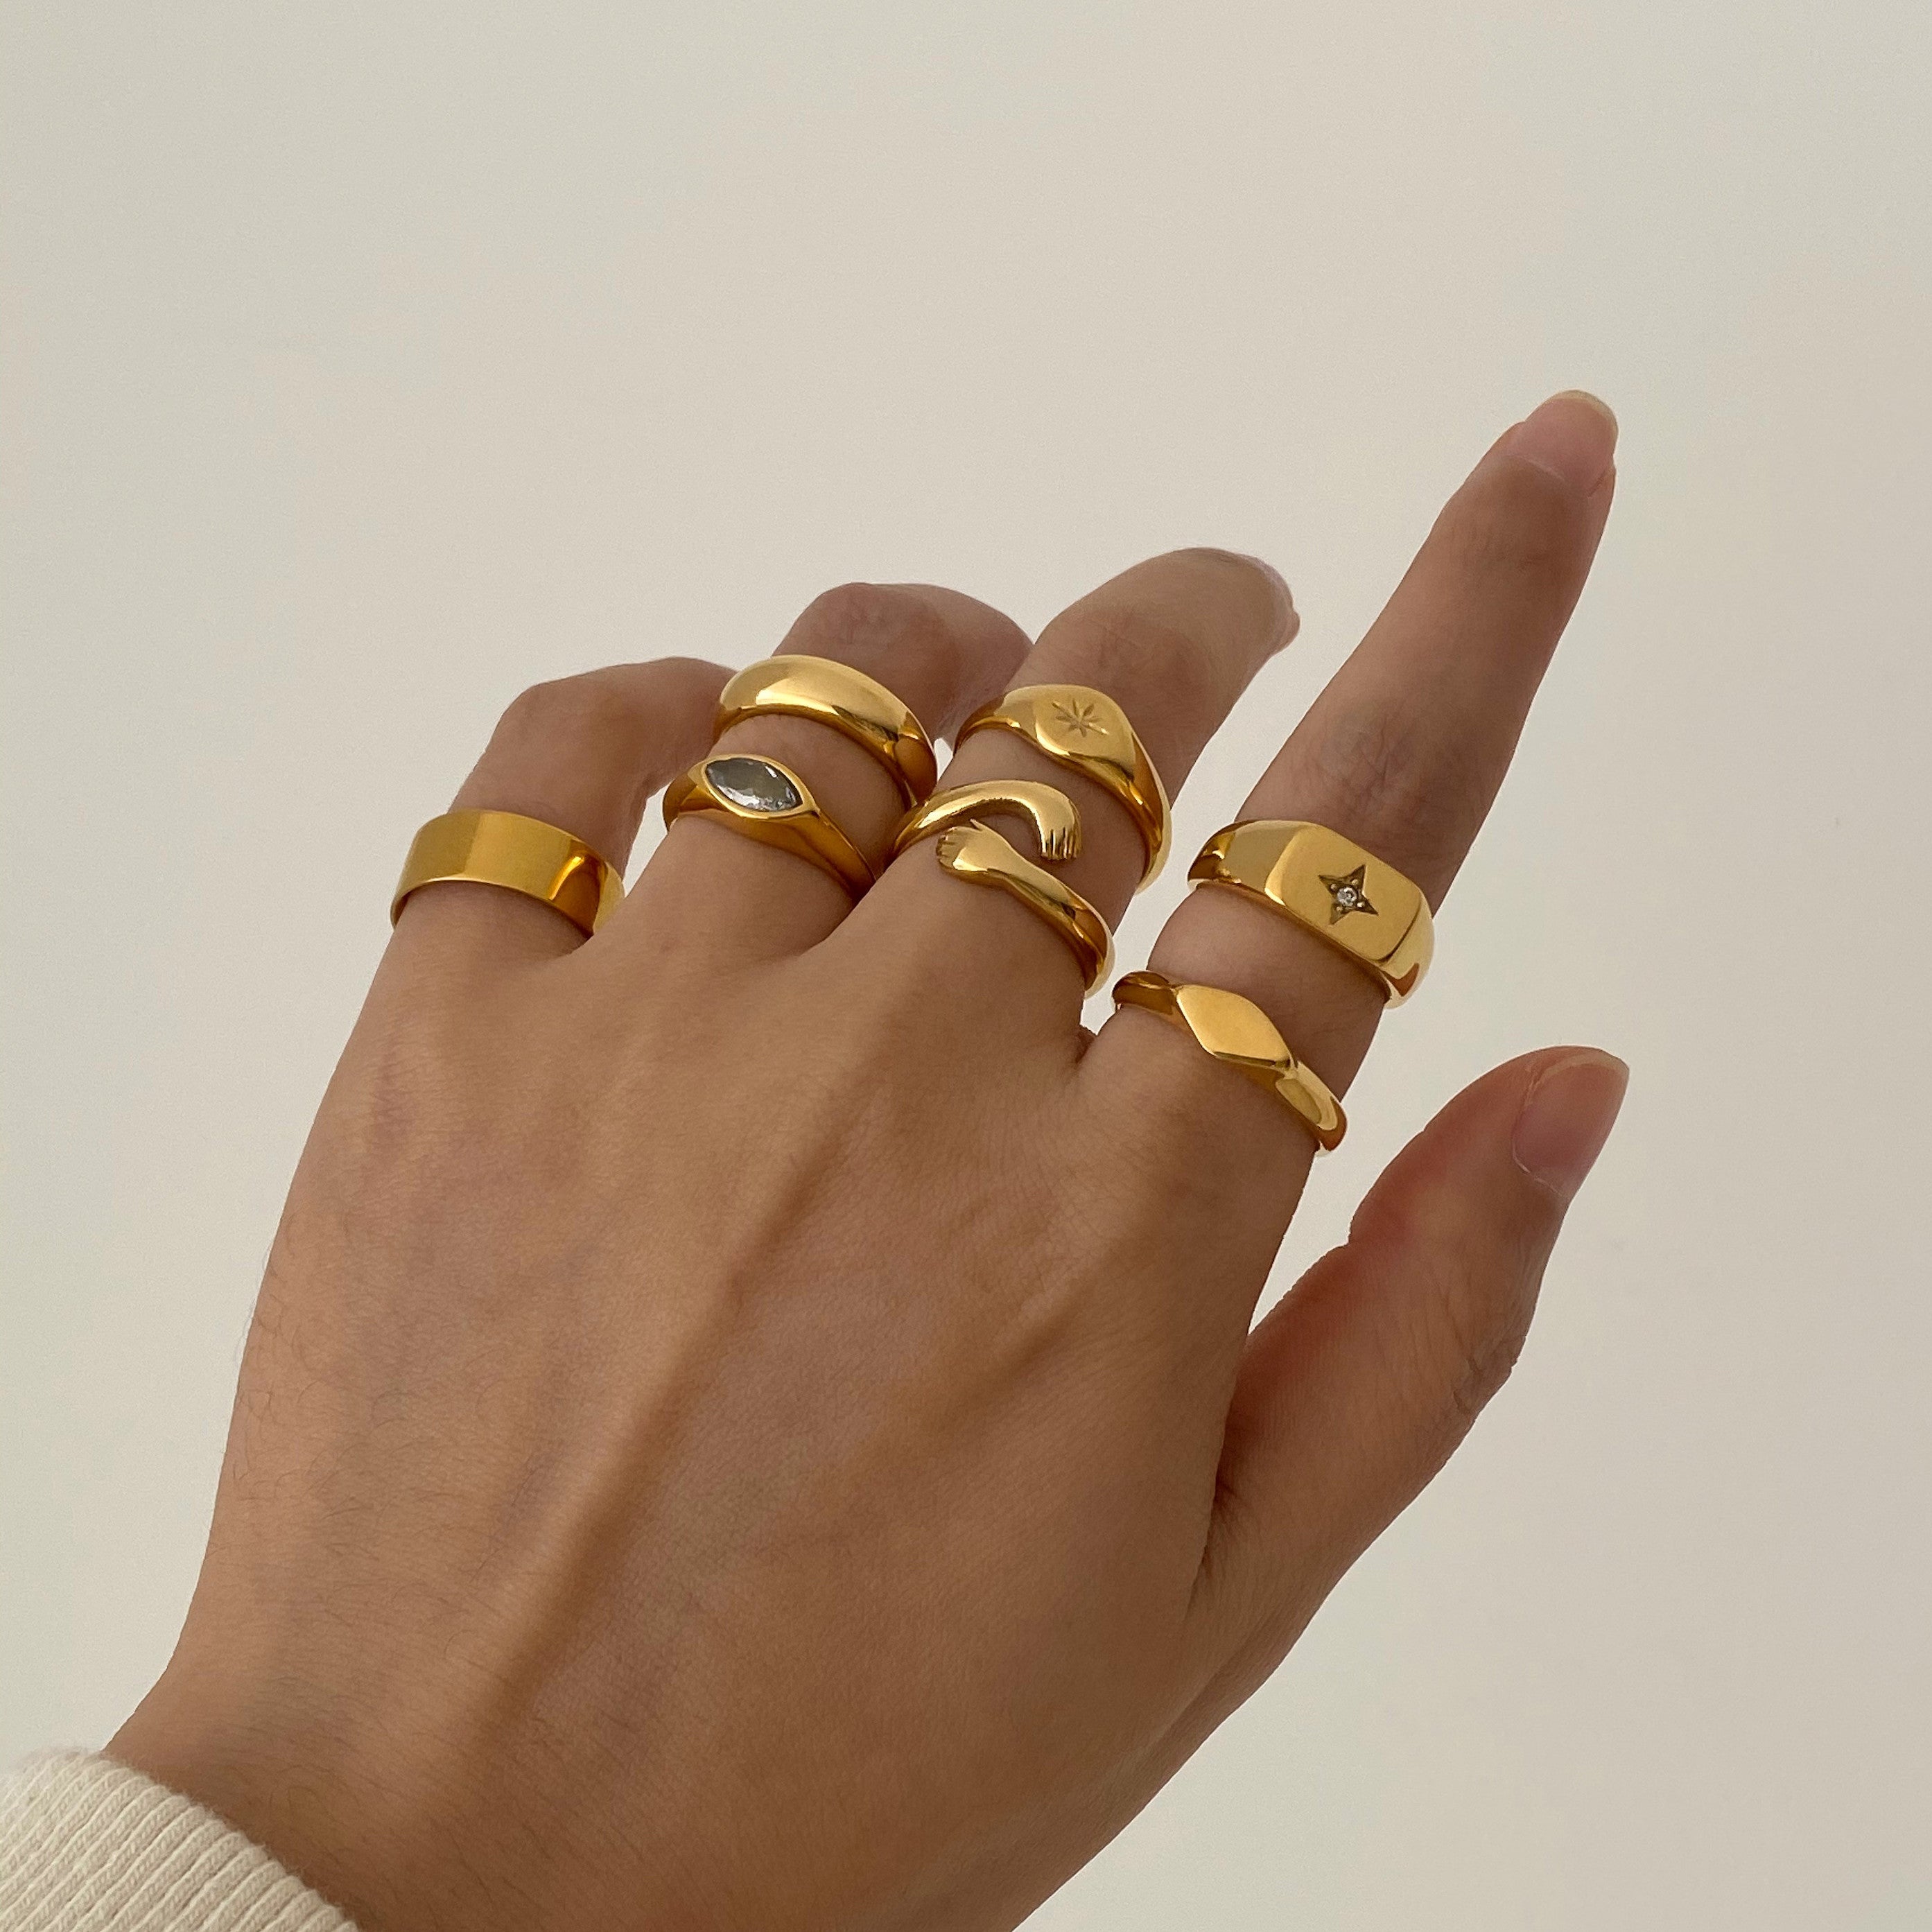 waterproof gold stackable rings